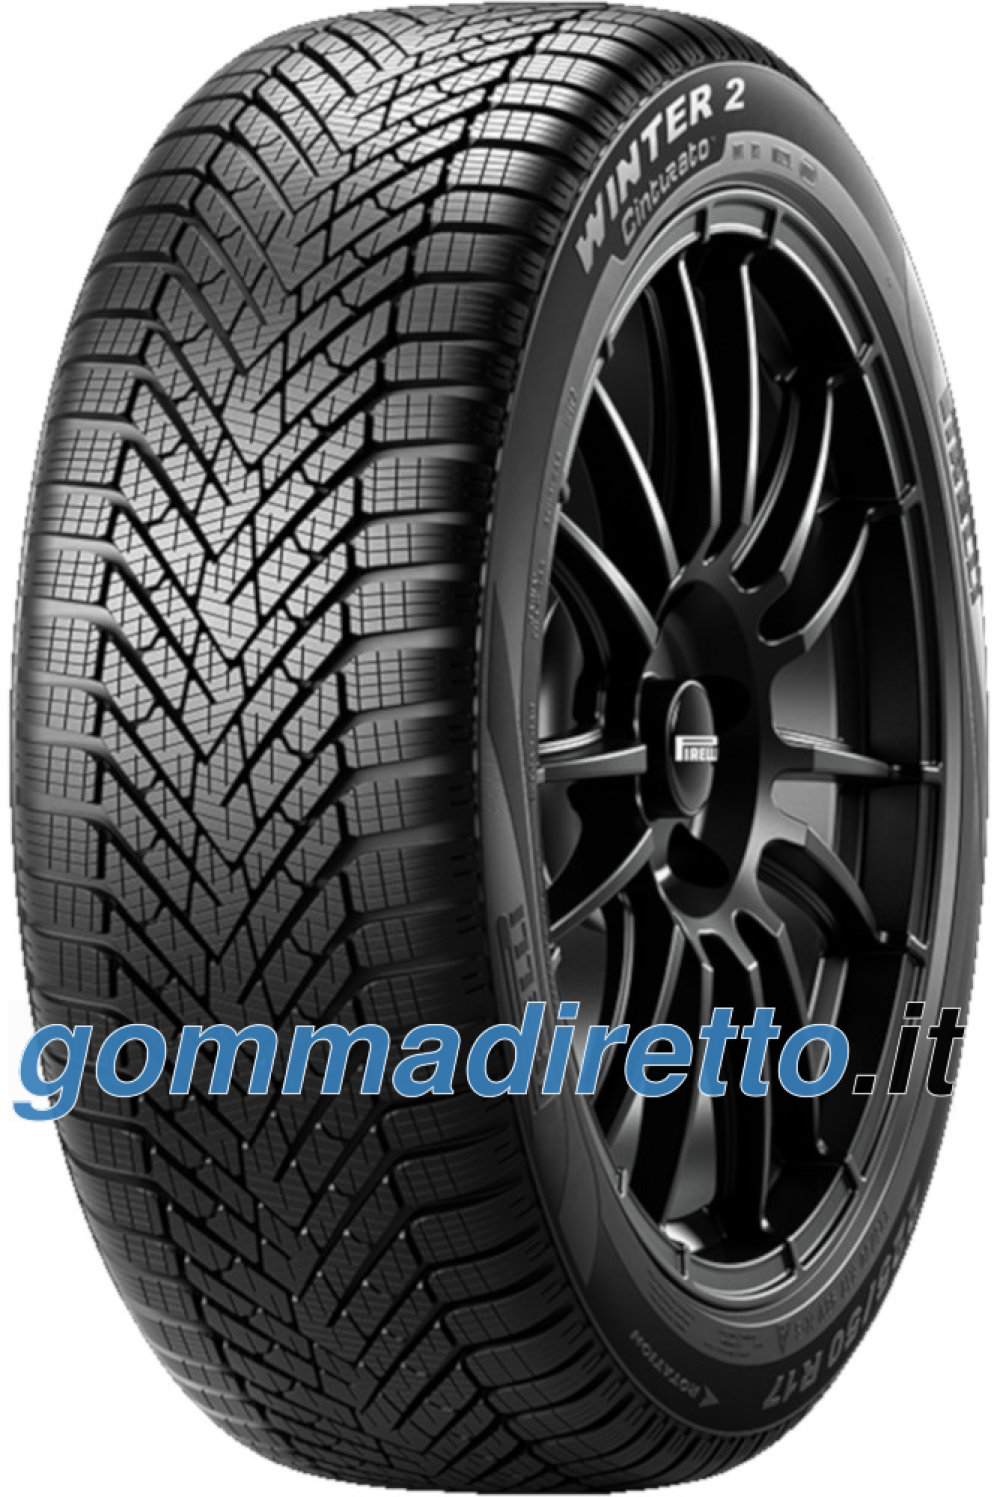 Image of        Pirelli Cinturato Winter 2 ( 195/55 R16 91H XL )